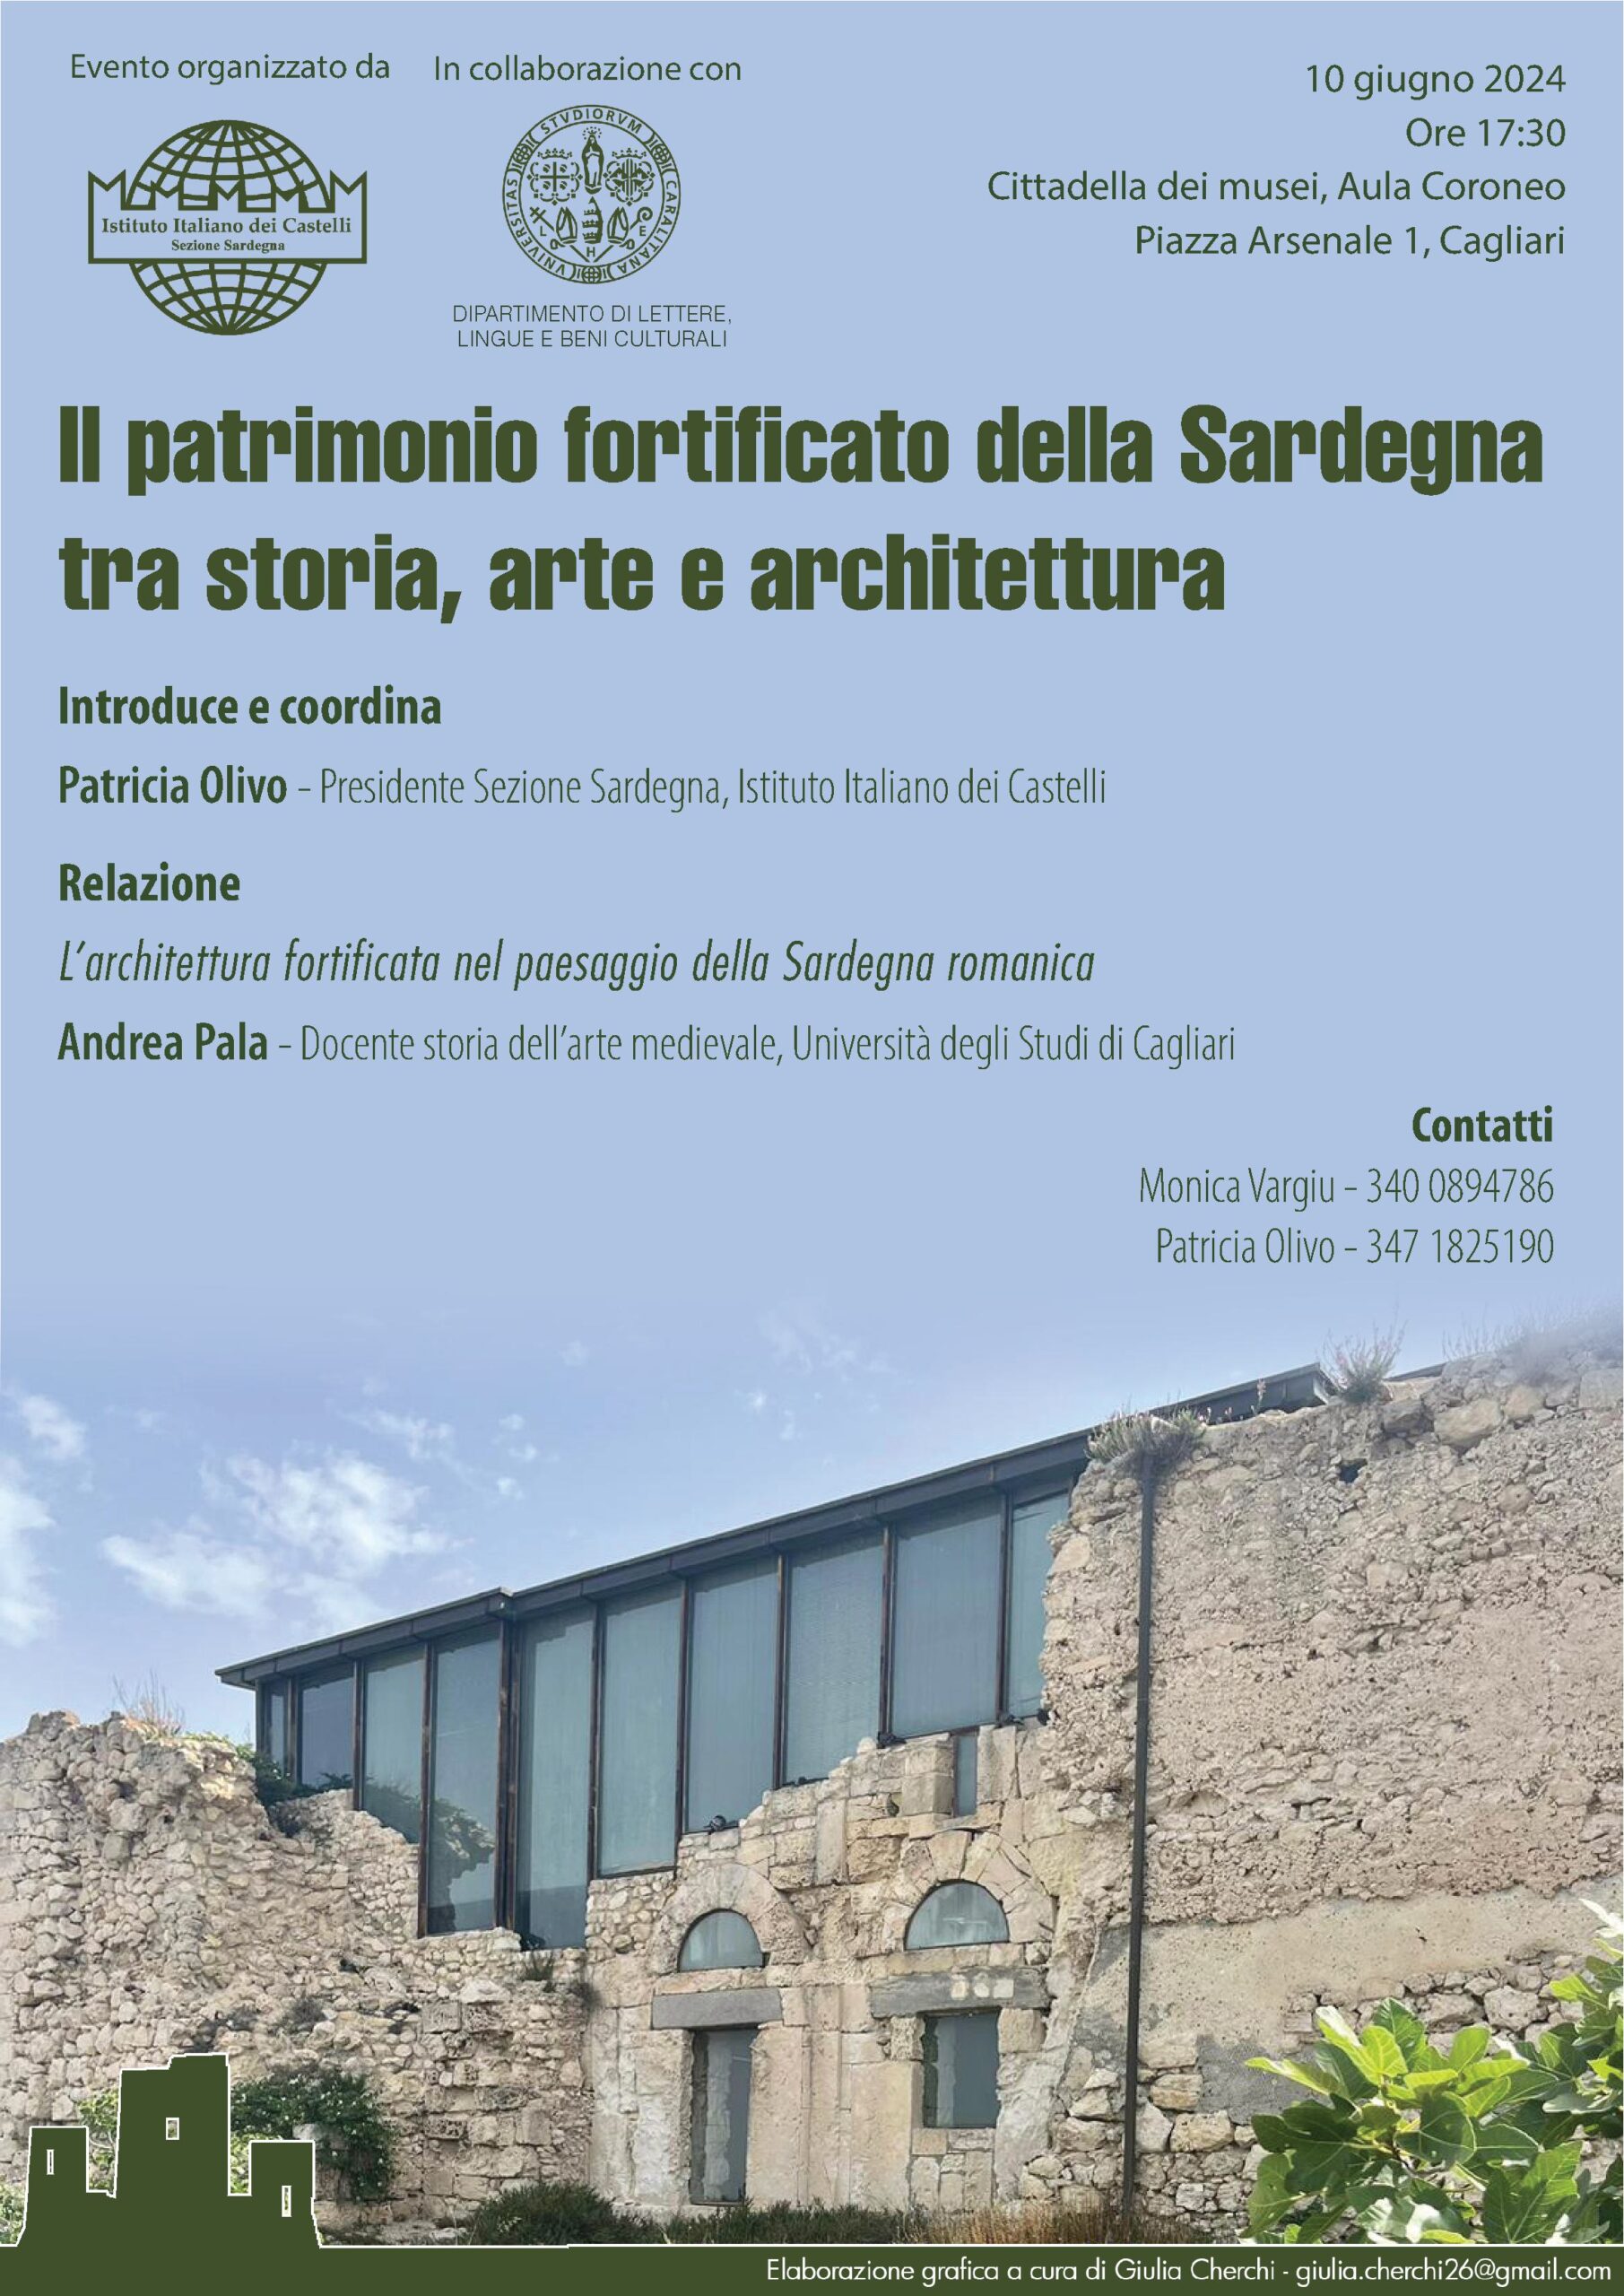 Terzo incontro Ciclo di conferenze “Il patrimonio fortificato della Sardegna tra storia, arte e architettura”. L’architettura fortificata nel paesaggio della Sardegna romanica